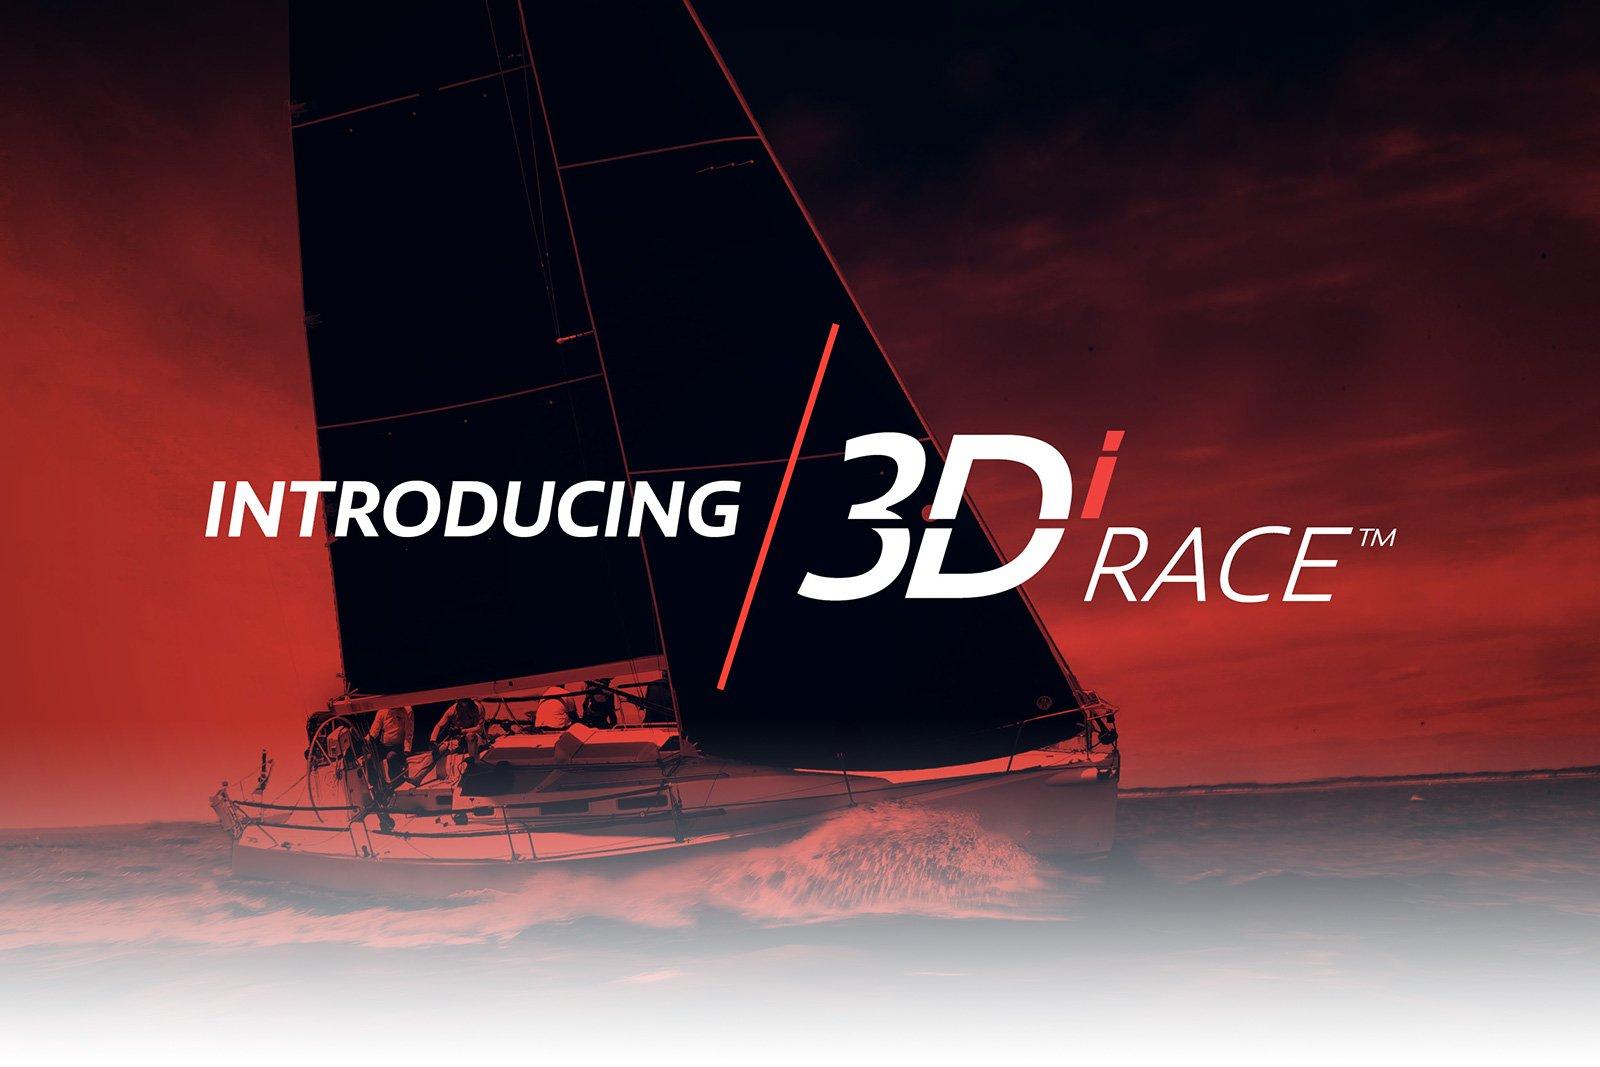 INTRODUCING 3Di RACE